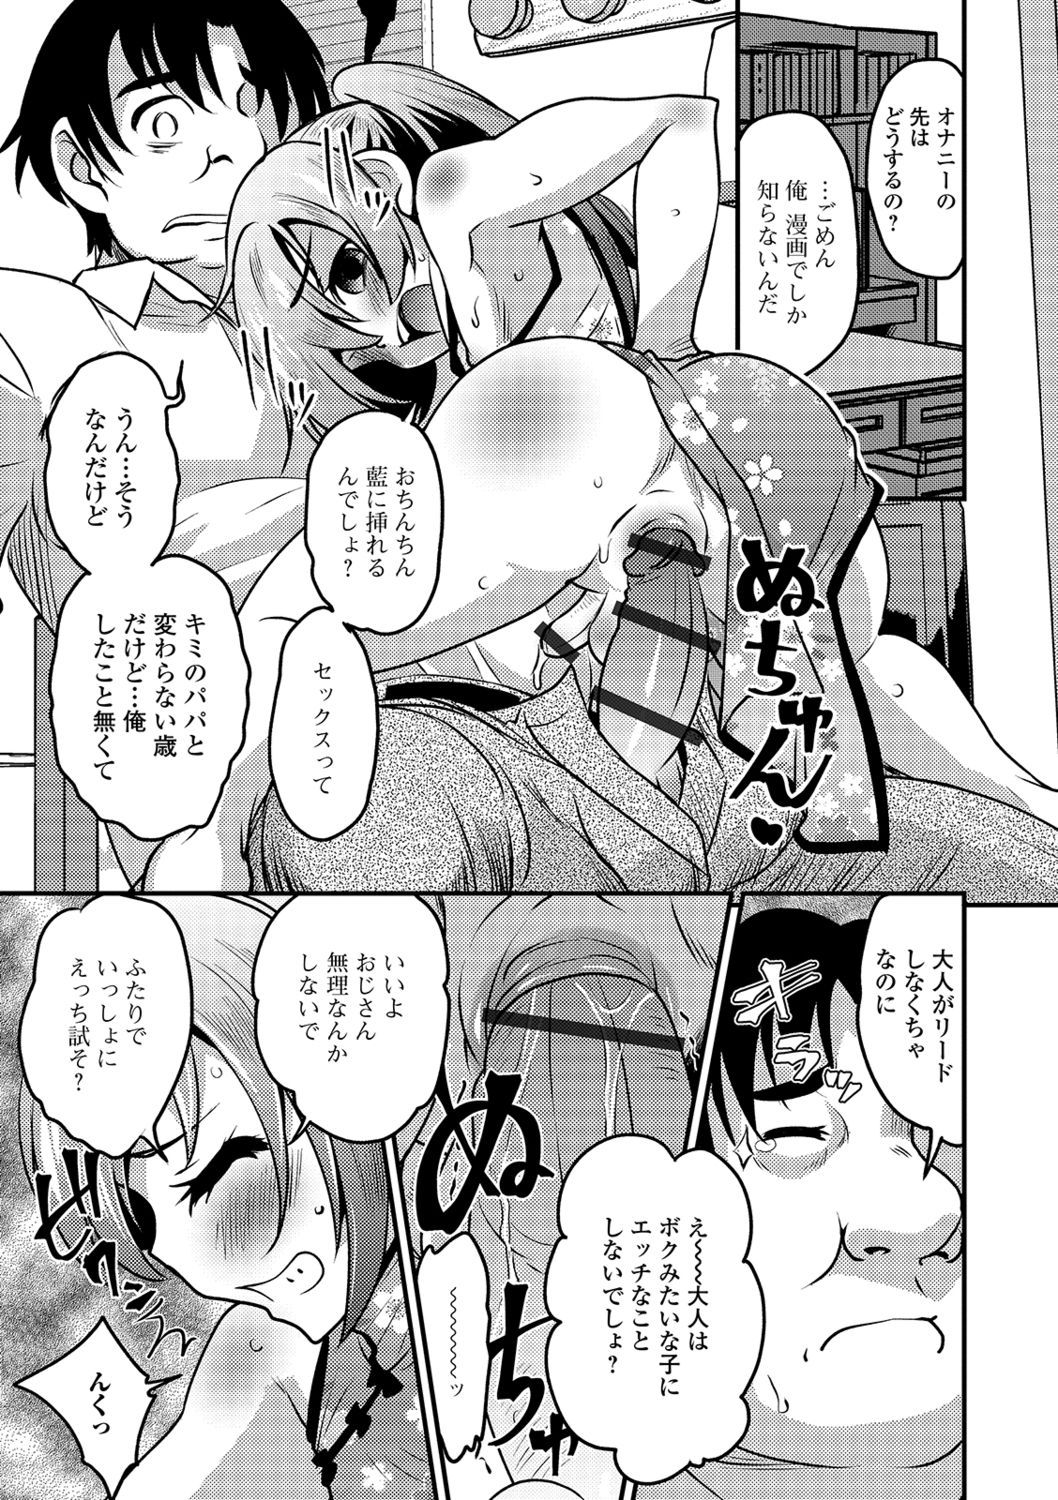 [Anthology] Gekkan Web Otoko no Ko-llection! S Vol. 41 [Digital] page 15 full